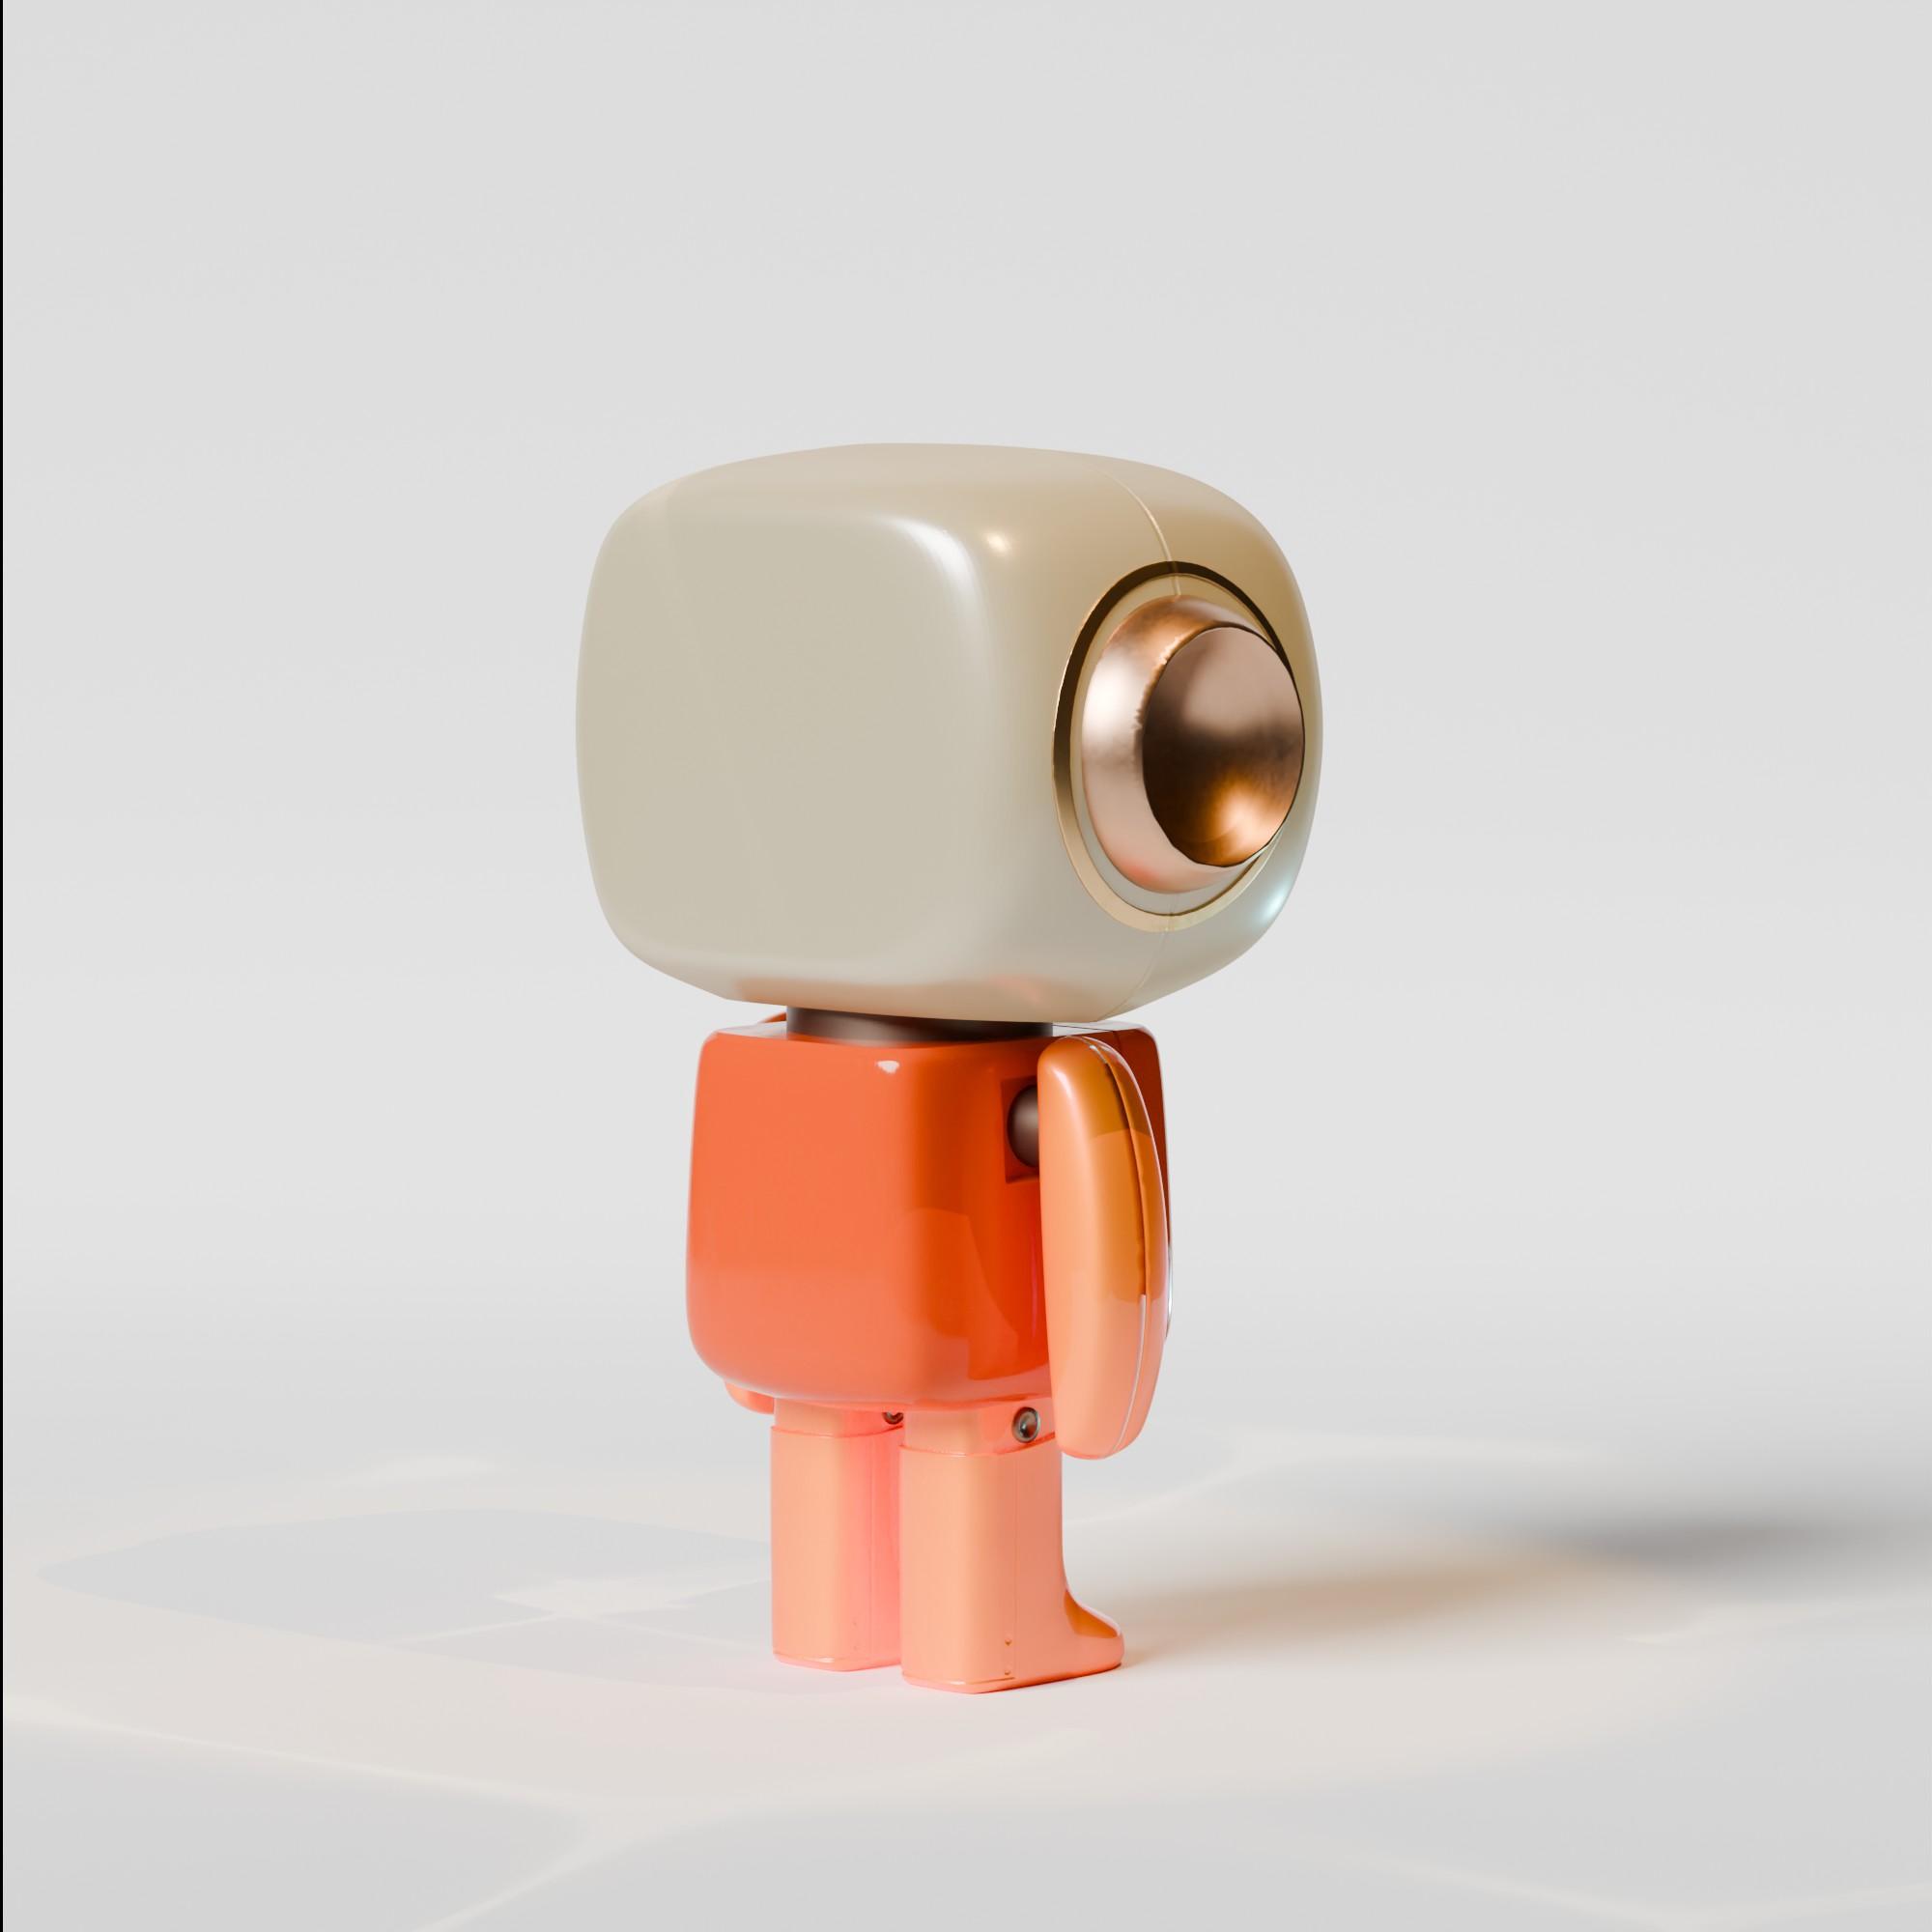 Cute Baby Robot  3d model